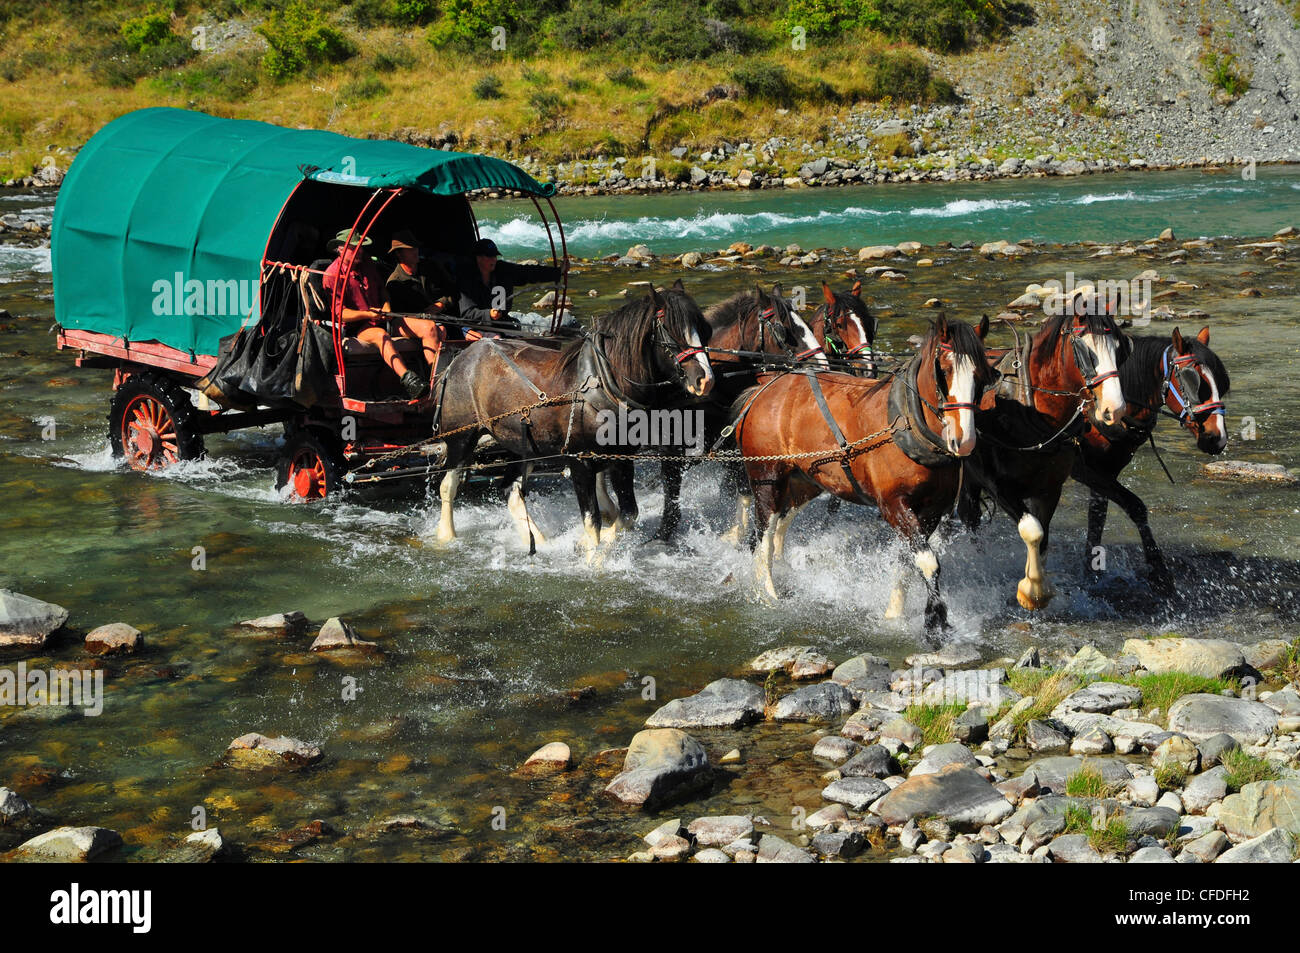 Les gens de cheval et une charrette, Ahuriri River, South Island, New Zealand Banque D'Images